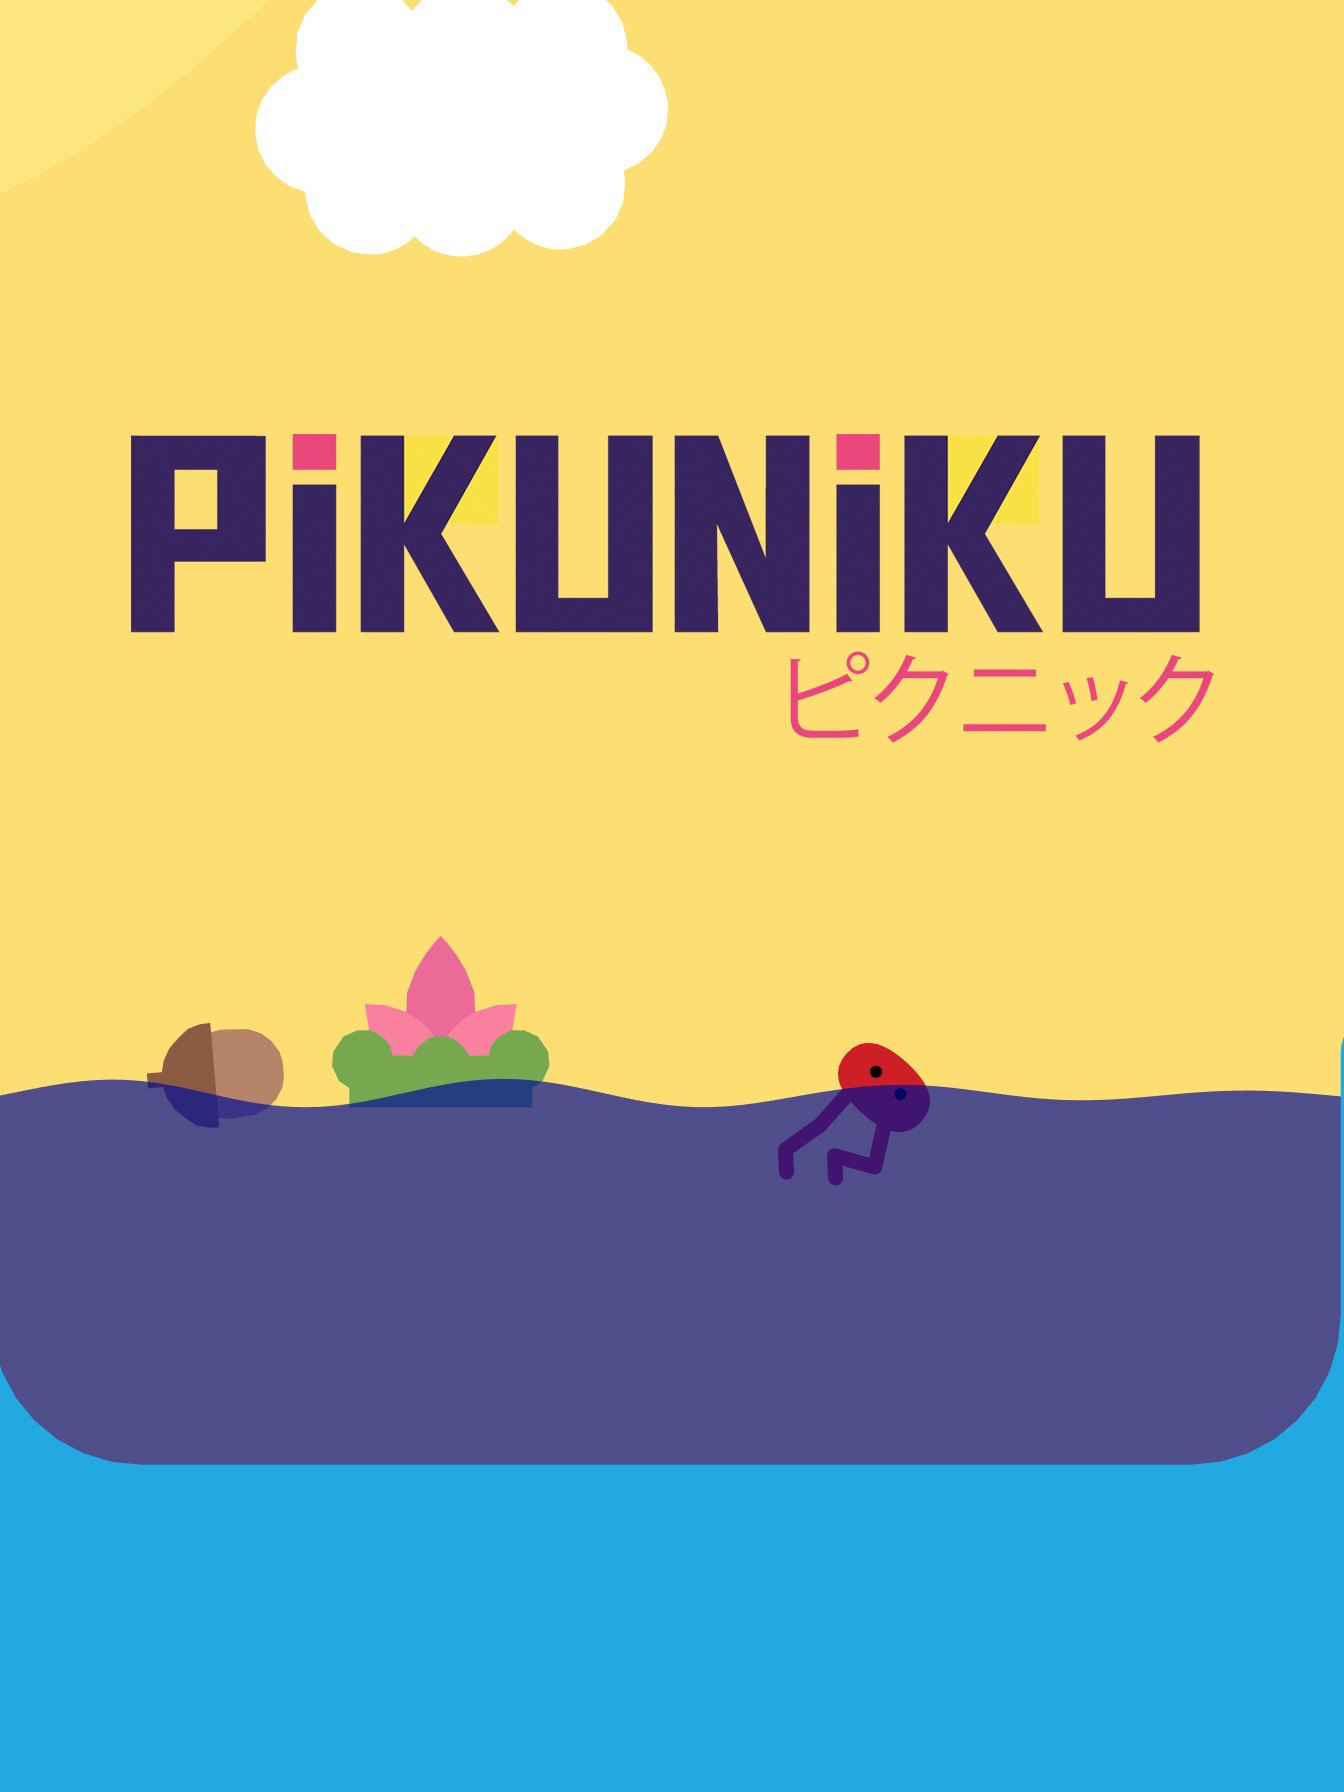 Image of Pikuniku